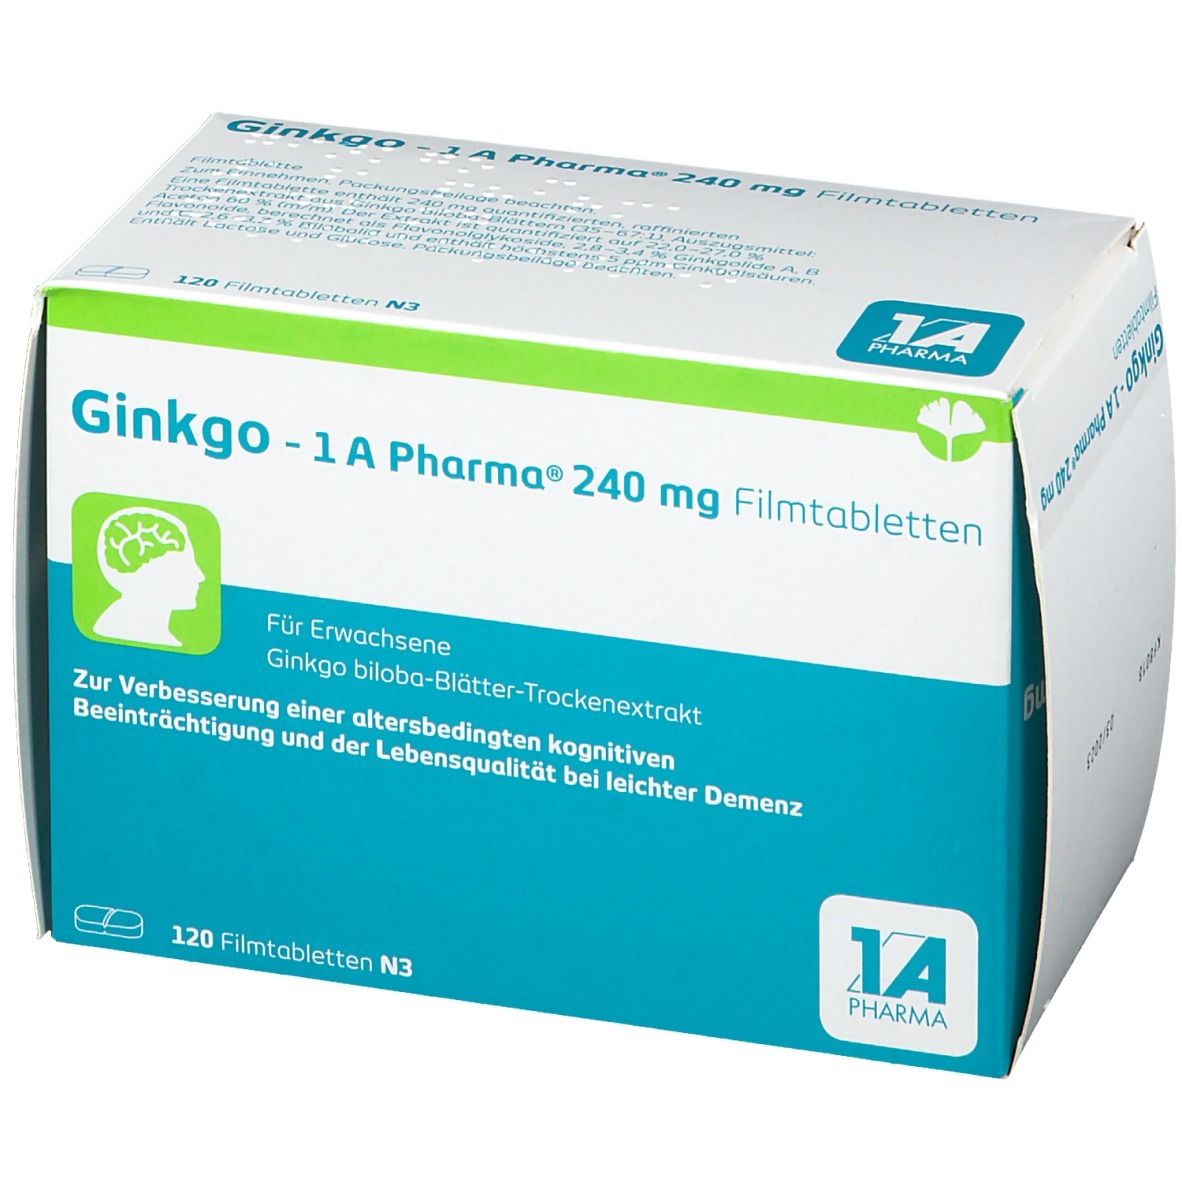 Ginkgo - 1 A Pharma® 240 mg